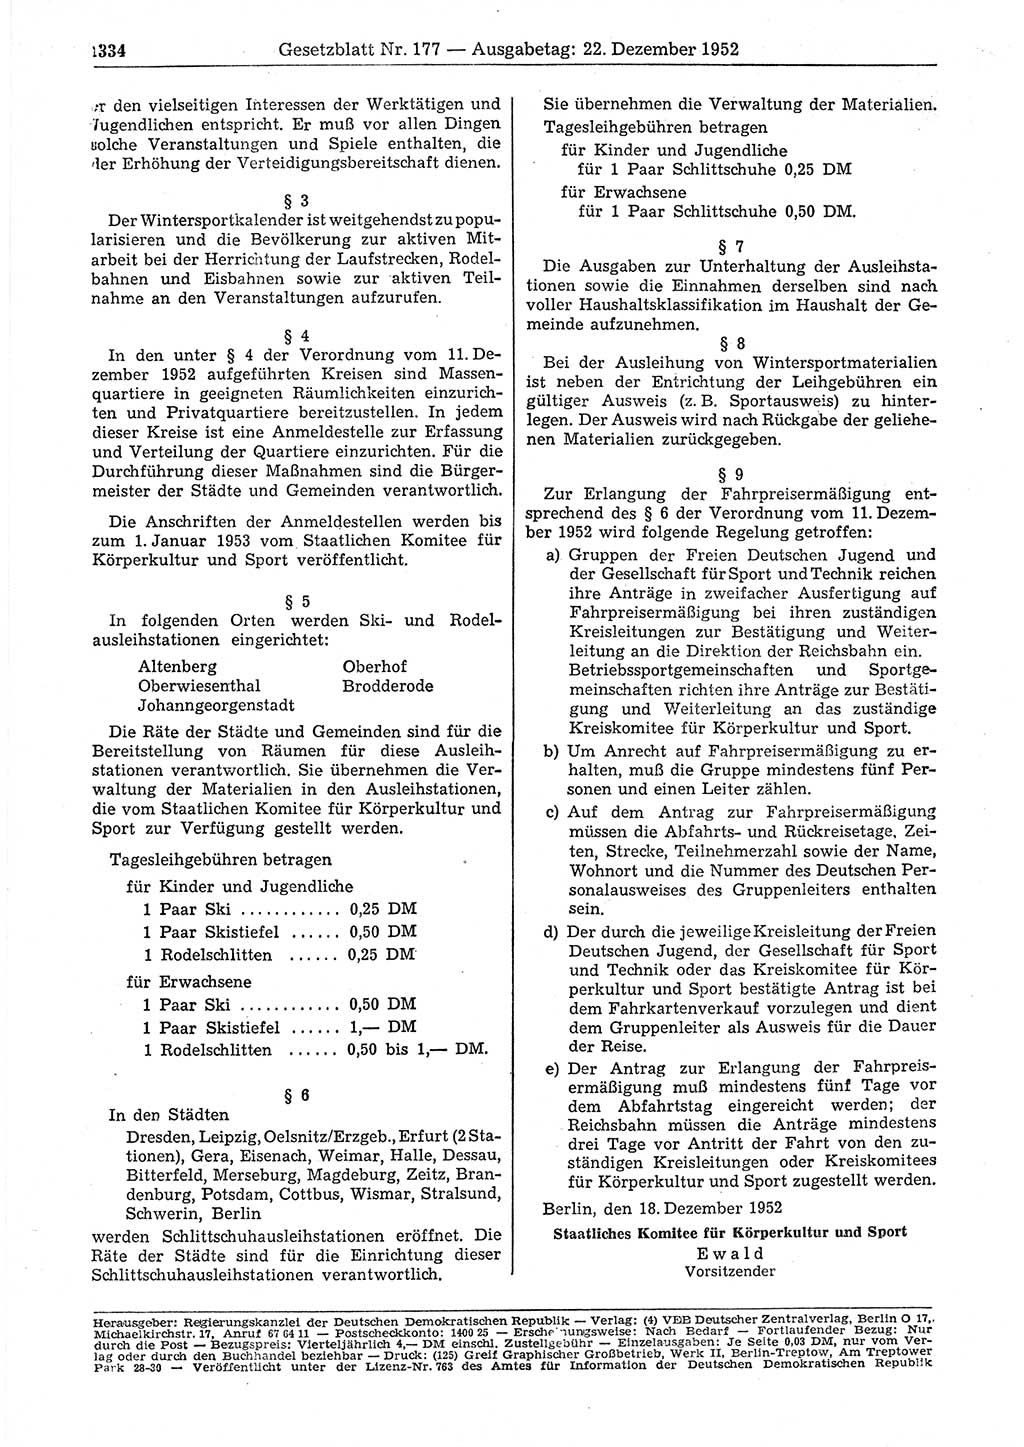 Gesetzblatt (GBl.) der Deutschen Demokratischen Republik (DDR) 1952, Seite 1334 (GBl. DDR 1952, S. 1334)